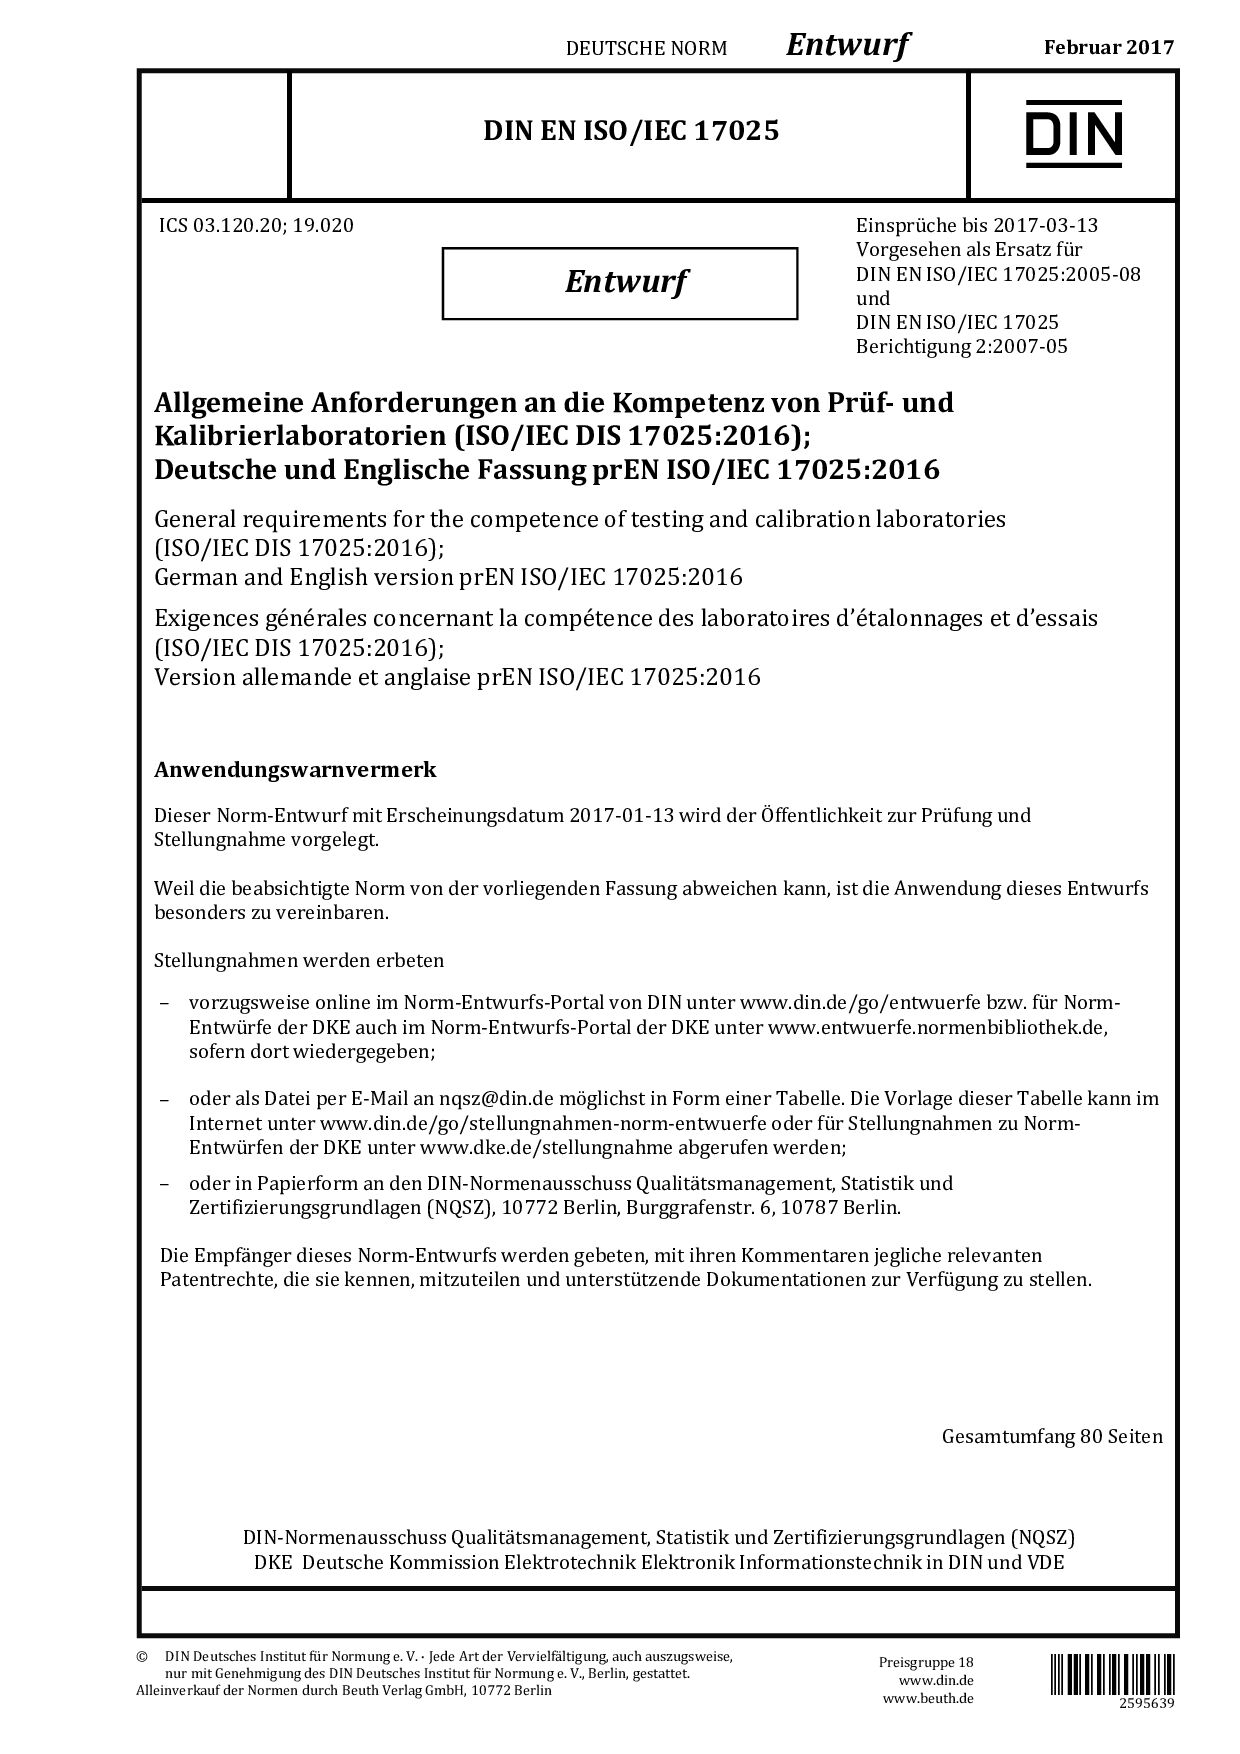 DIN EN ISO IEC 17025 E:2017-02